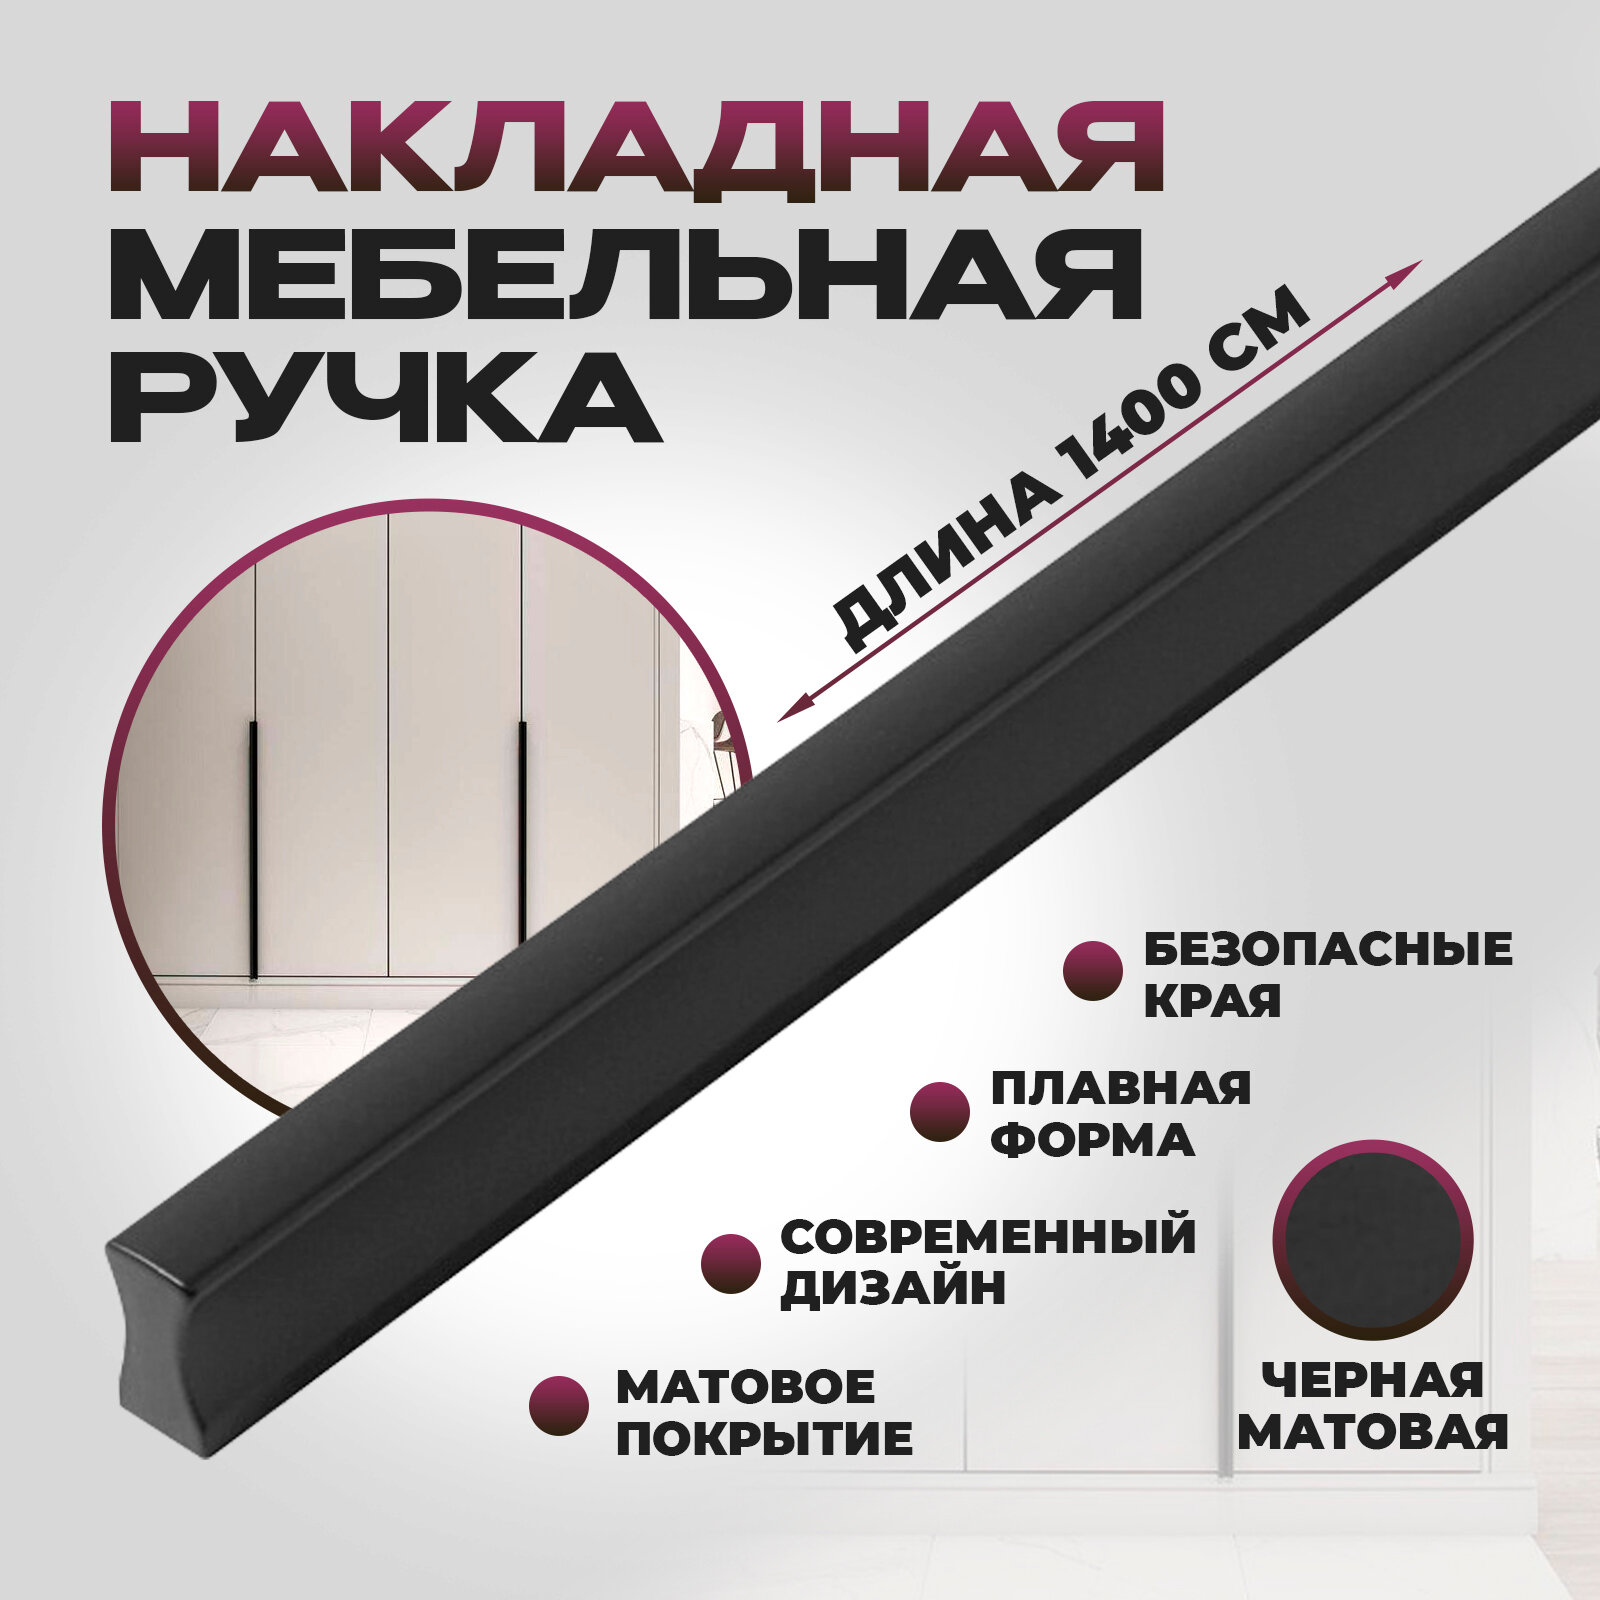 Ручка мебельная, накладная Гранд длинная - 1400 мм (140см), межцентровое расстояние - 3х348, цвет покрытия - Черный матовый